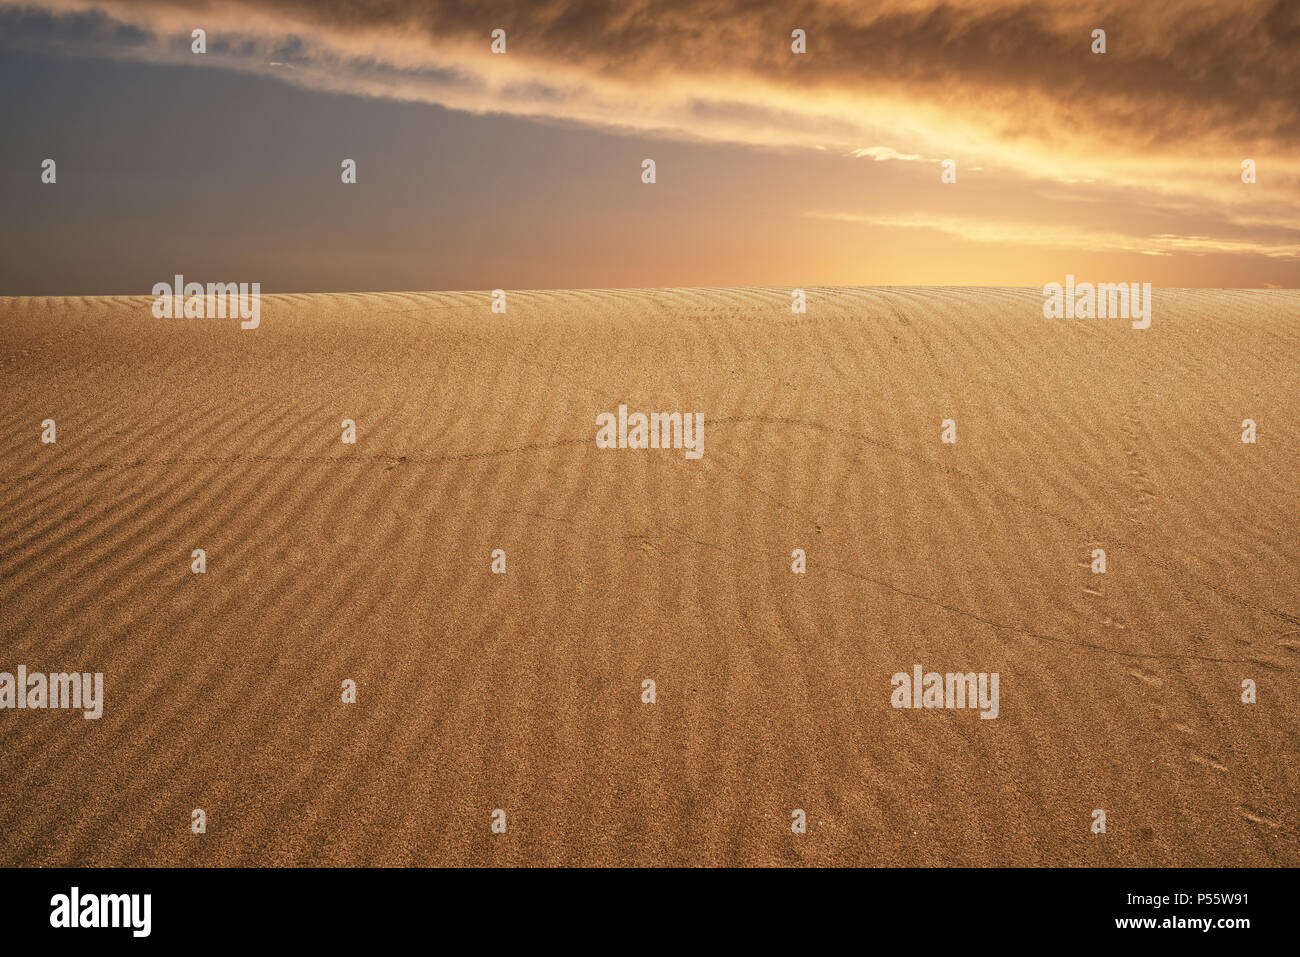 Die globale Erwärmung Konzept. Einsame Dünen unter dramatischen Sonnenuntergang am Abend Himmel bei Dürre Wüstenlandschaft. Stockfoto